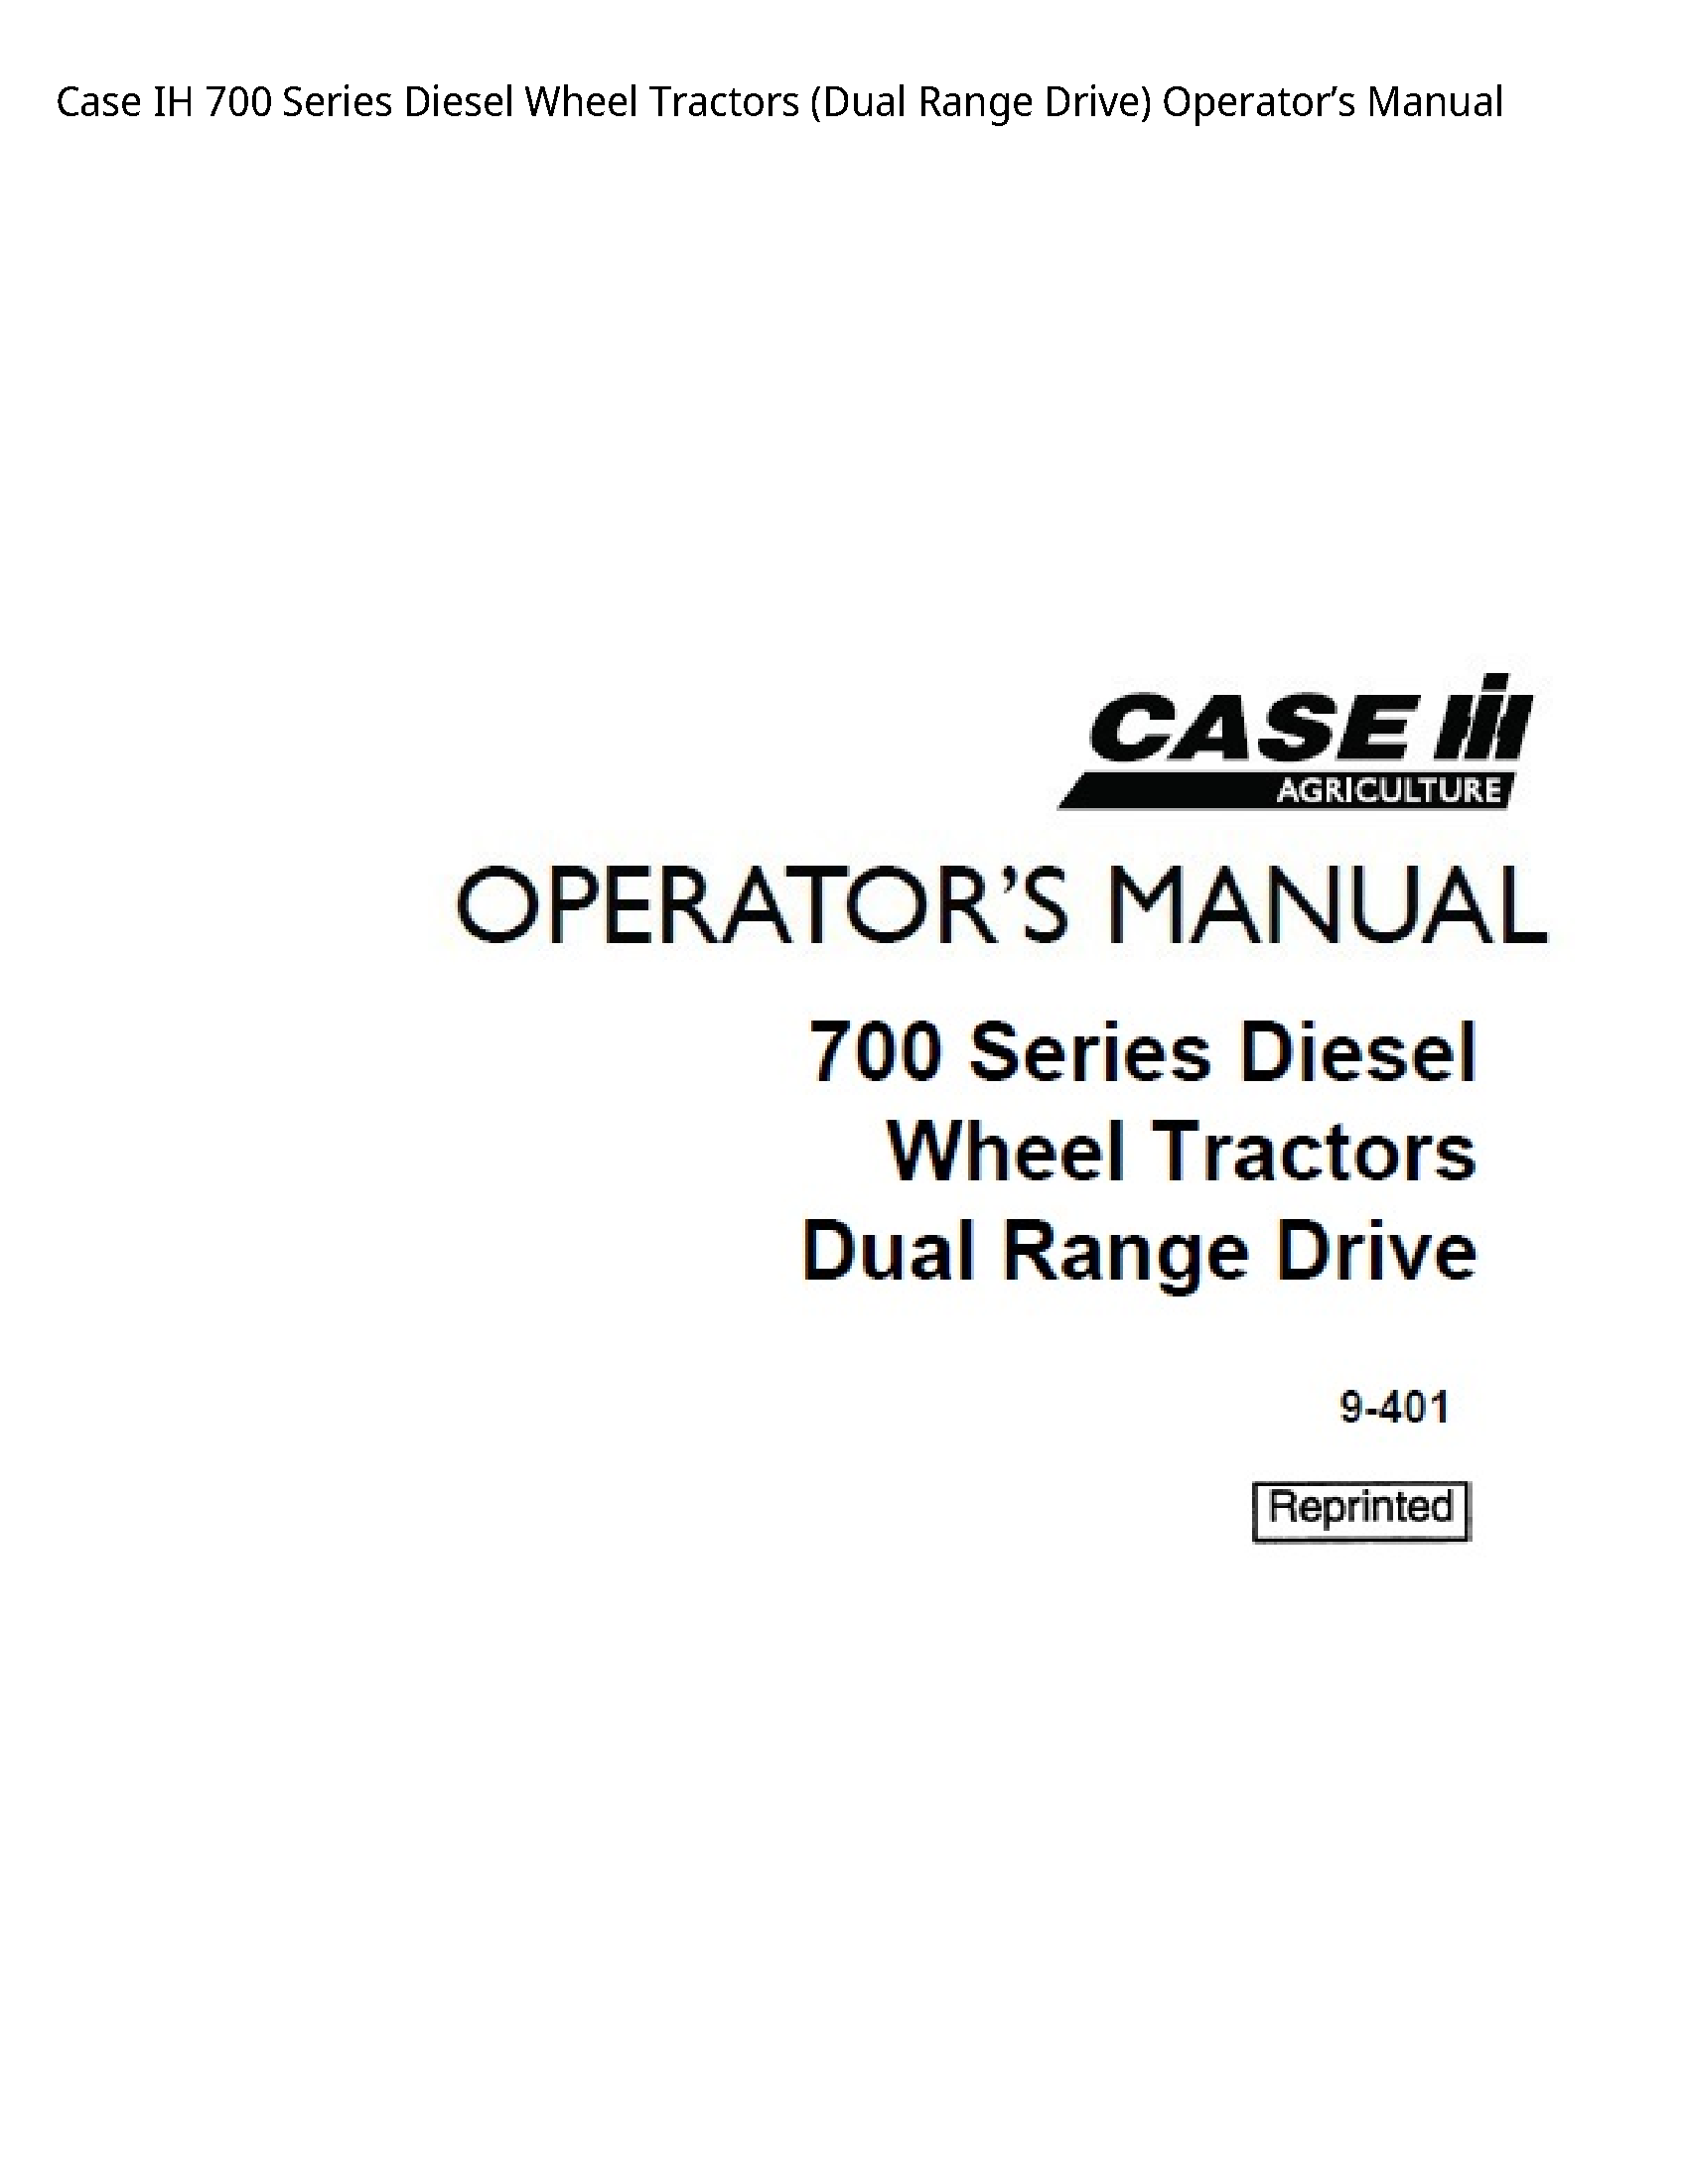 Case/Case IH 700 IH Series Diesel Wheel Tractors (Dual Range Drive) Operator’s manual